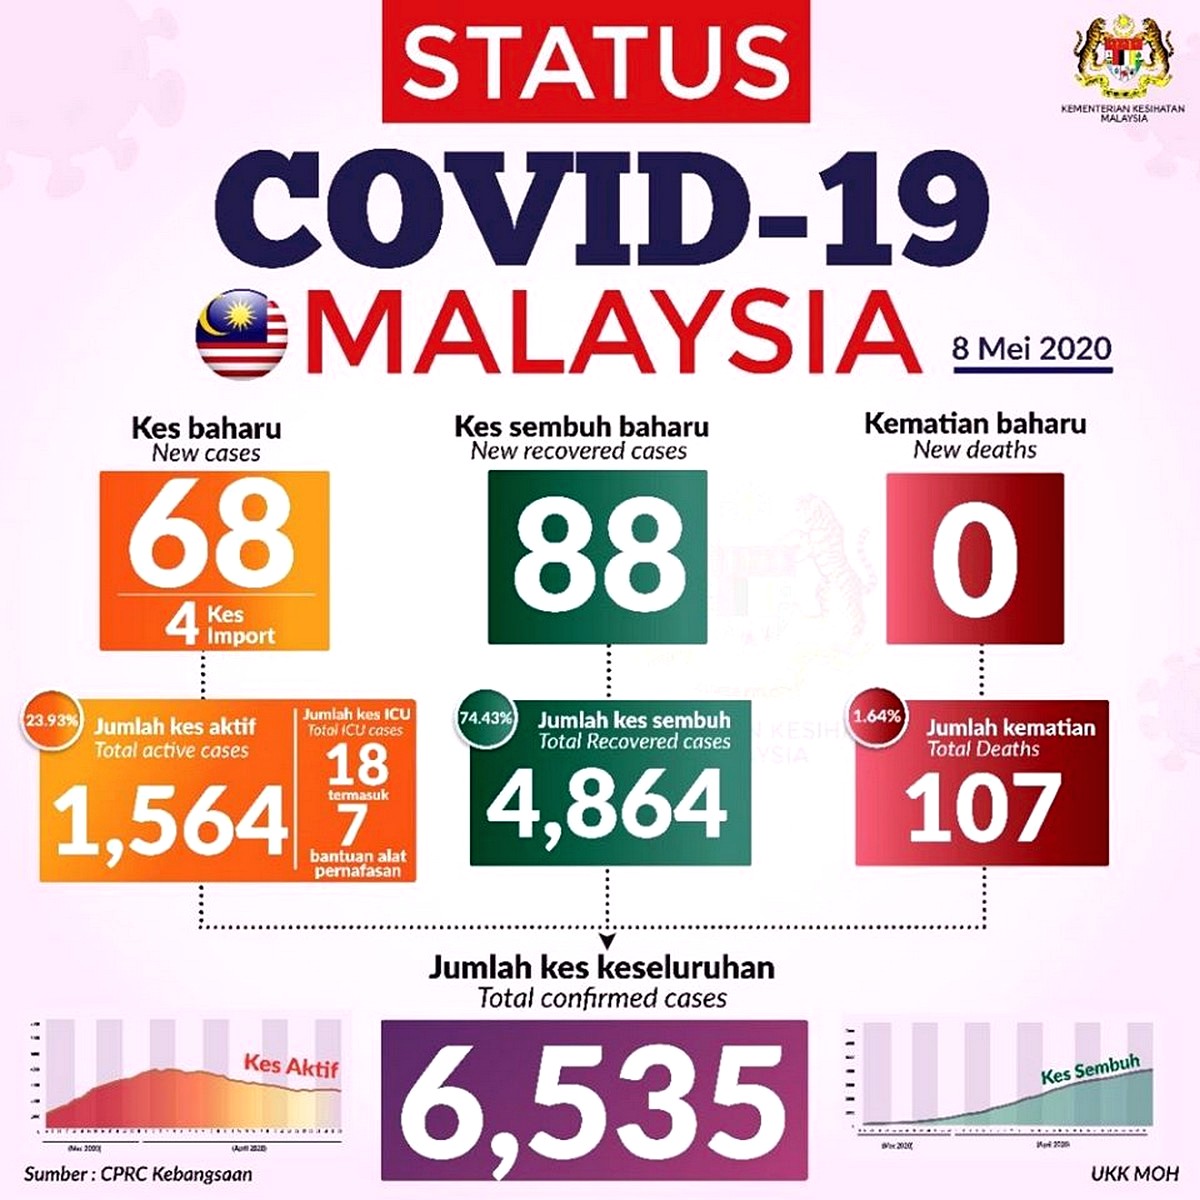 8th-May-2020-Coronavirus-Covid-19-Malaysia-update-001 - News 